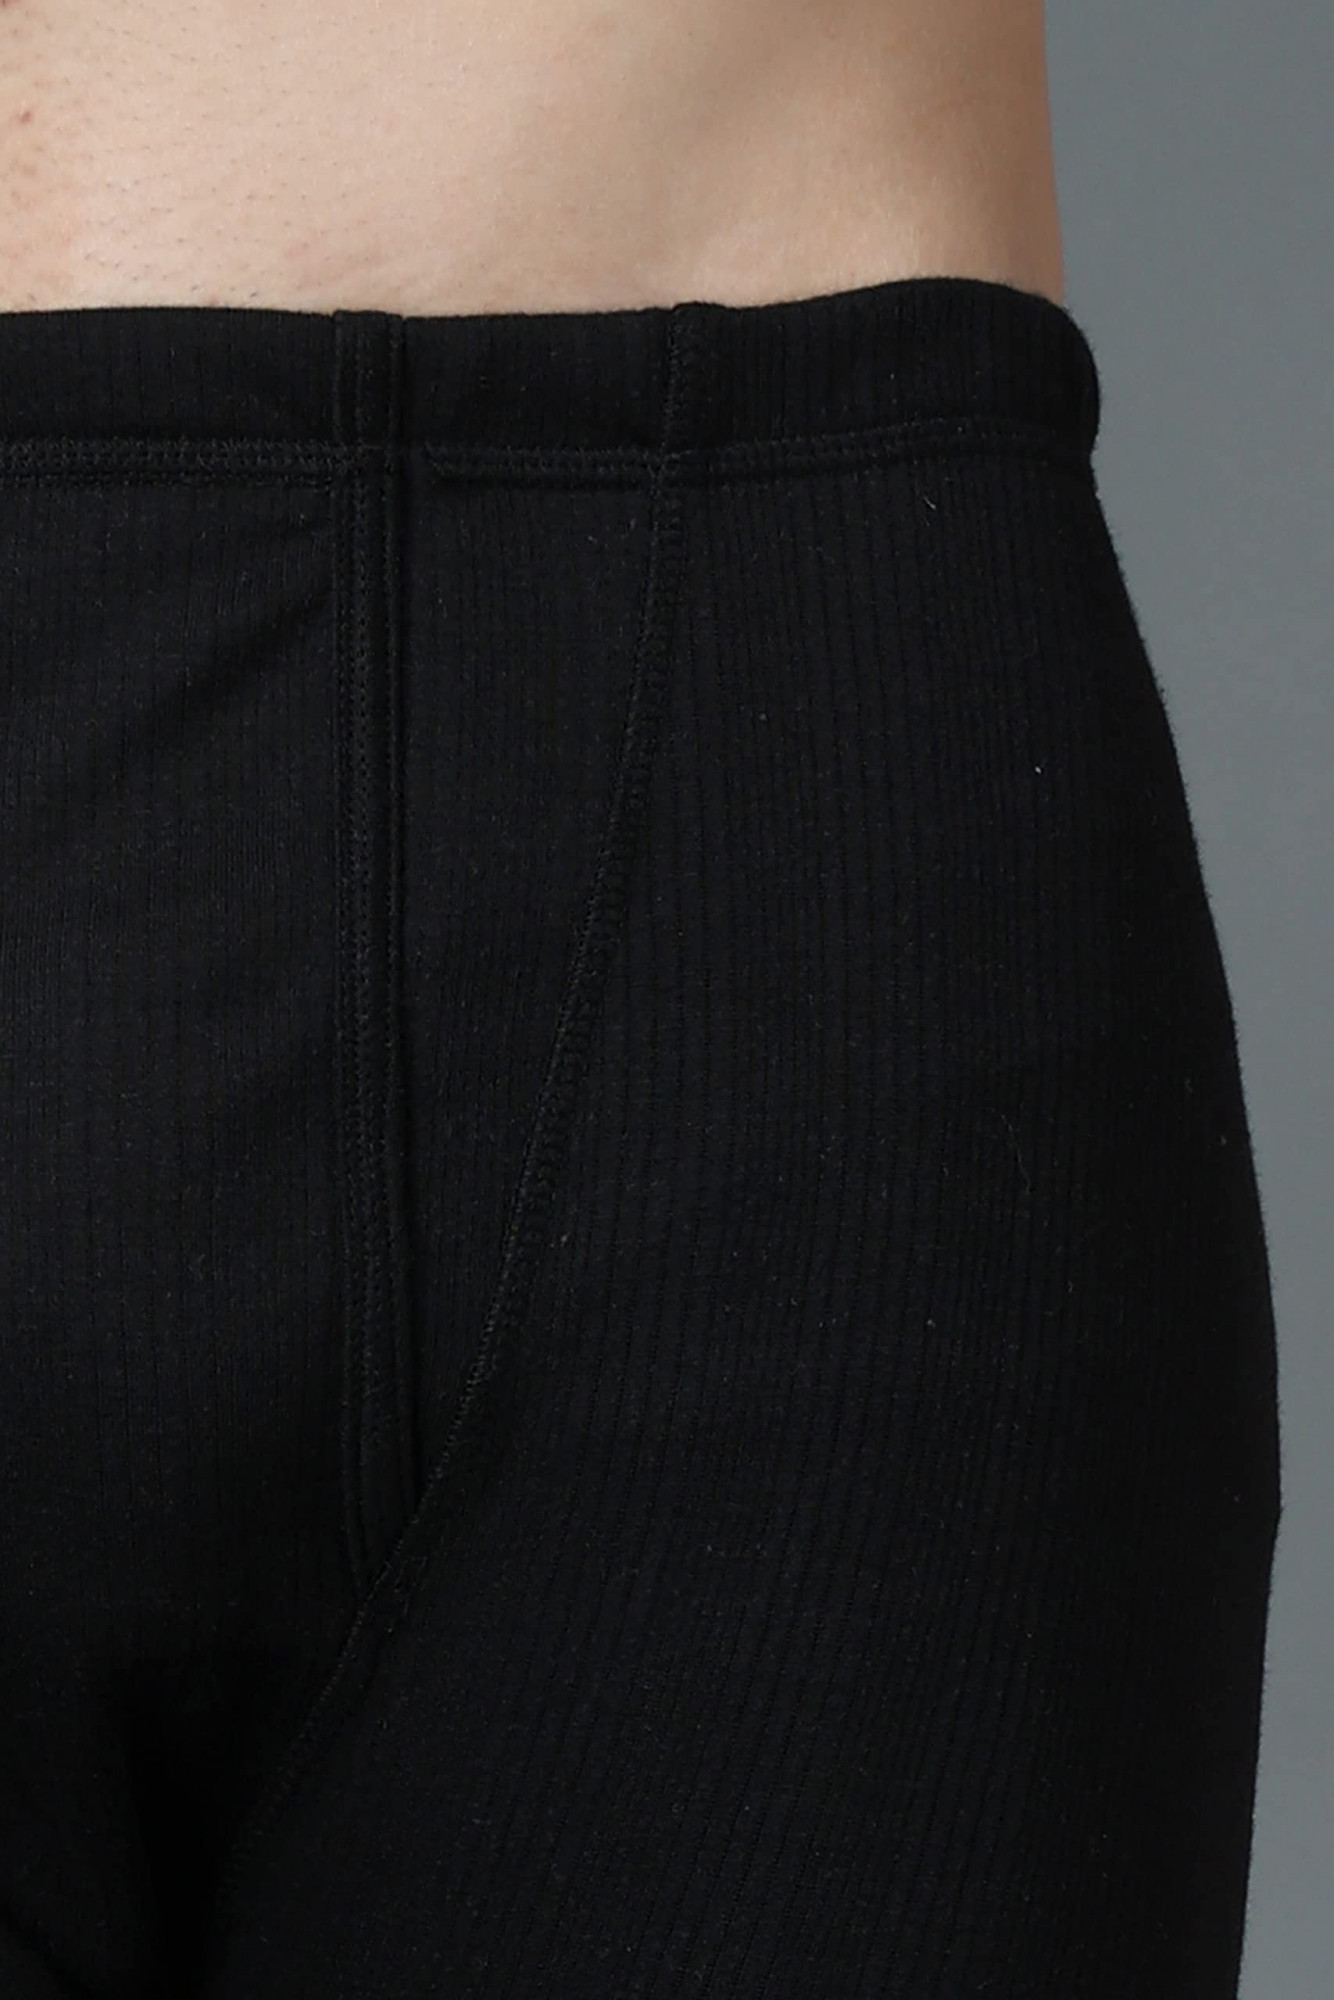 WearslimÂ® Premium Winter Thermal Bottom Underwear for Men